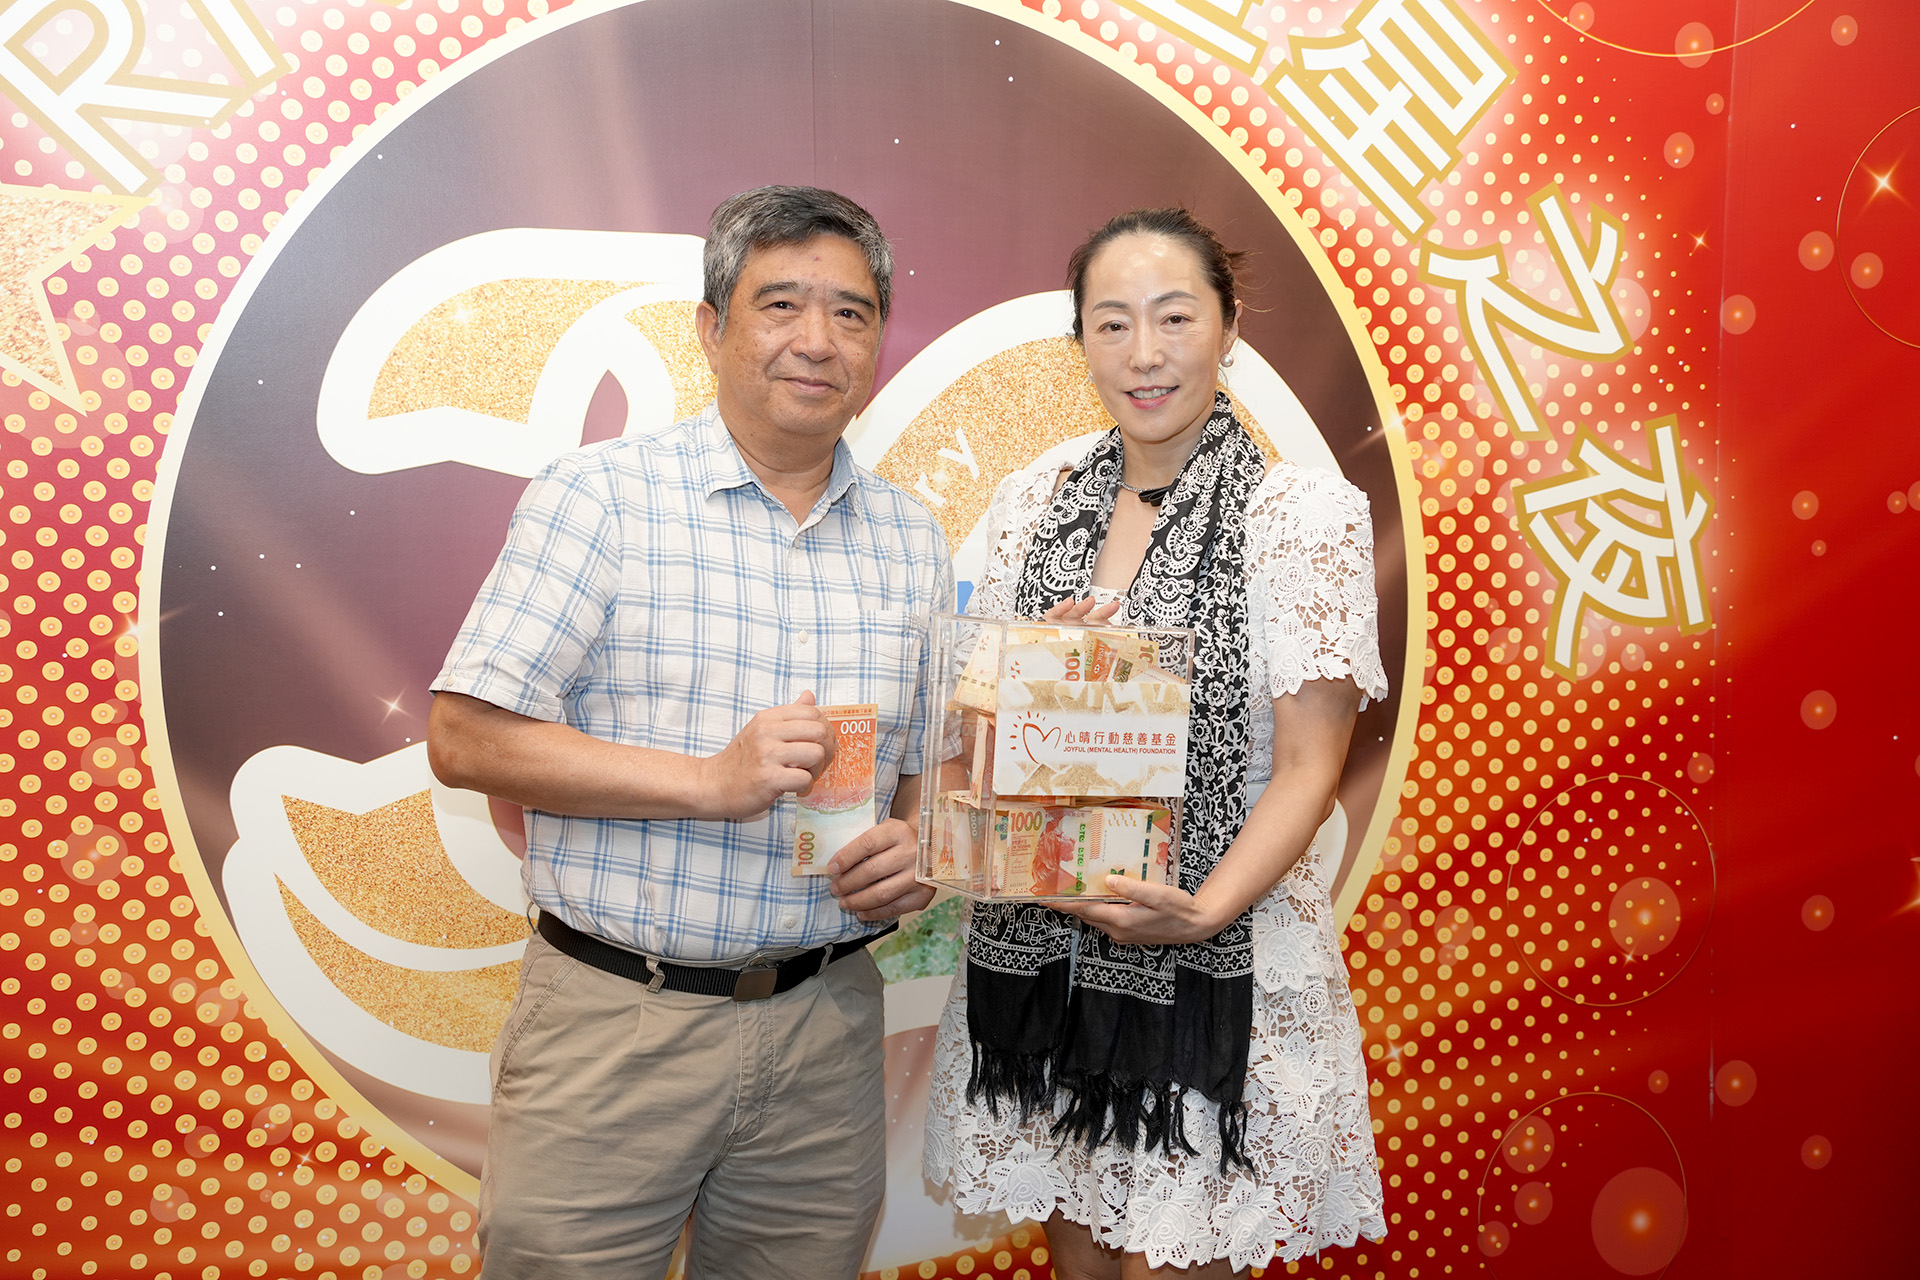 恭賀陳權英先生從星級百萬富翁遊戲中贏取HK$10,000獎金並與公司合共捐助HK$6000予「心晴行動慈善基金」